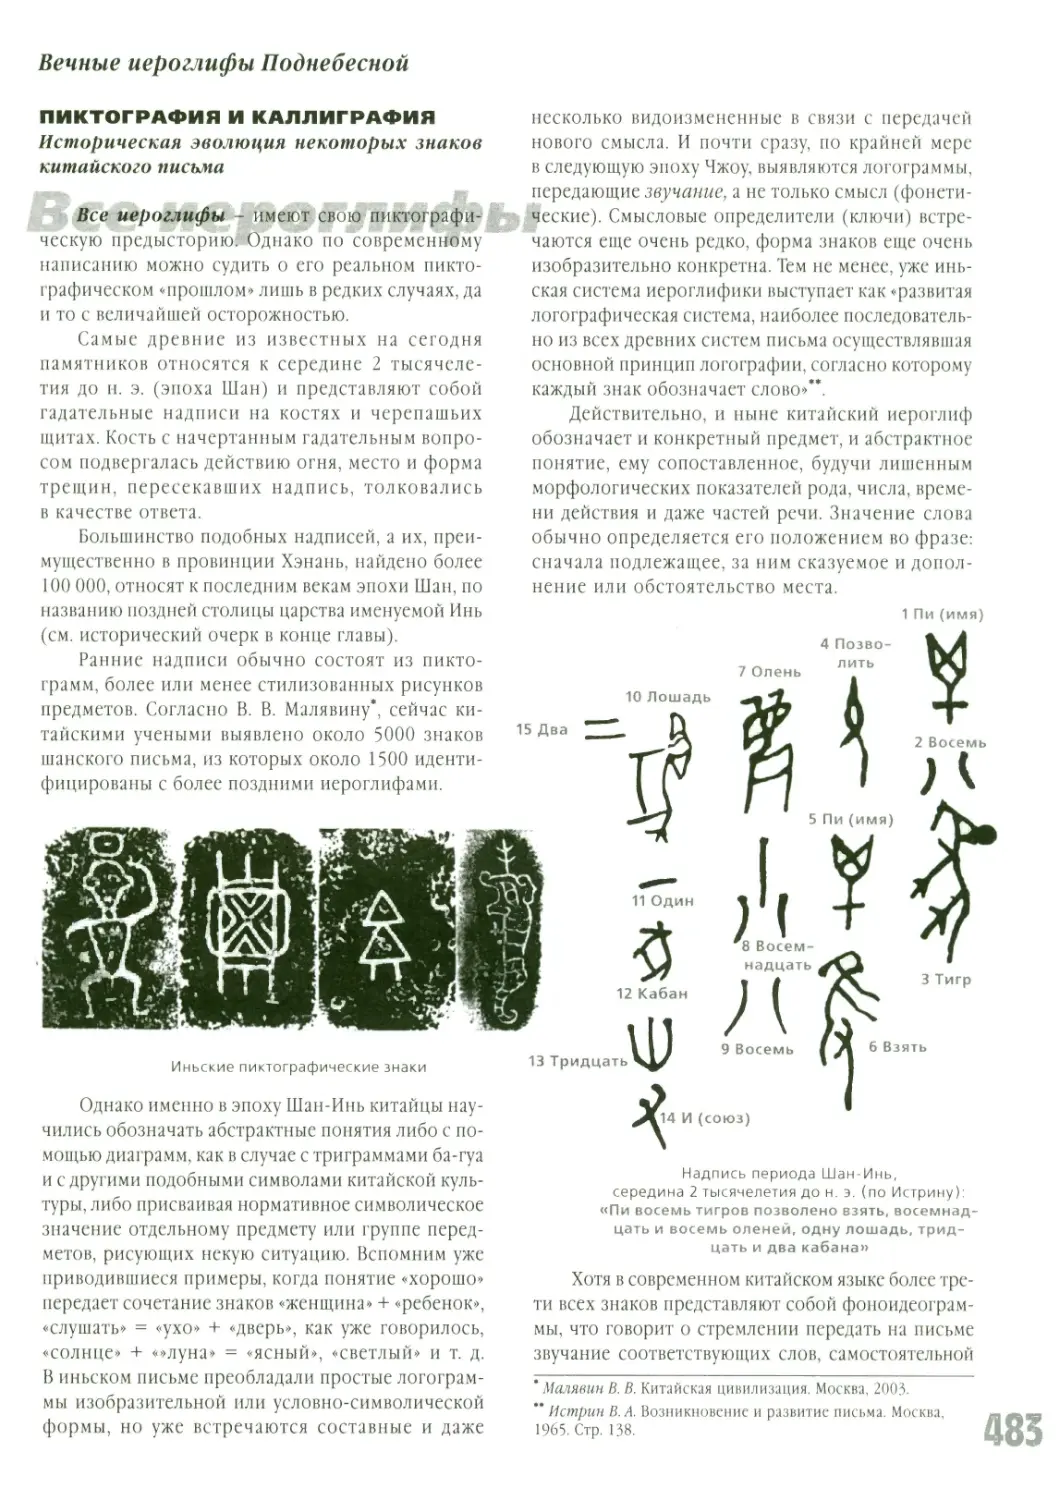 Пиктография и каллиграфия. Историческая эволюция некоторых знаков китайского письма